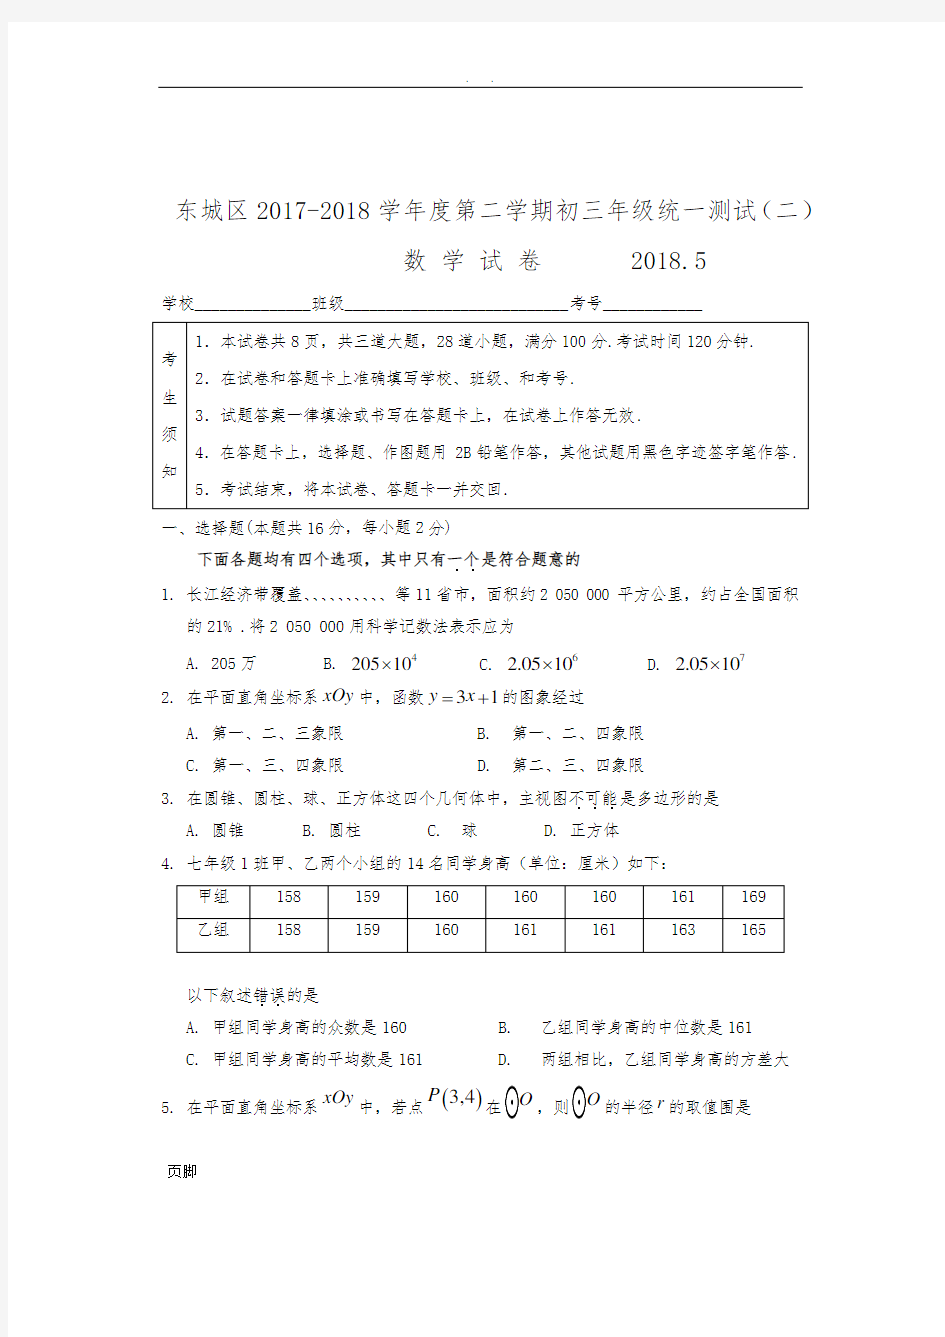 北京市东城区2017-2018学年度第二学期初三年级统一测试(二模)数学试卷及答案